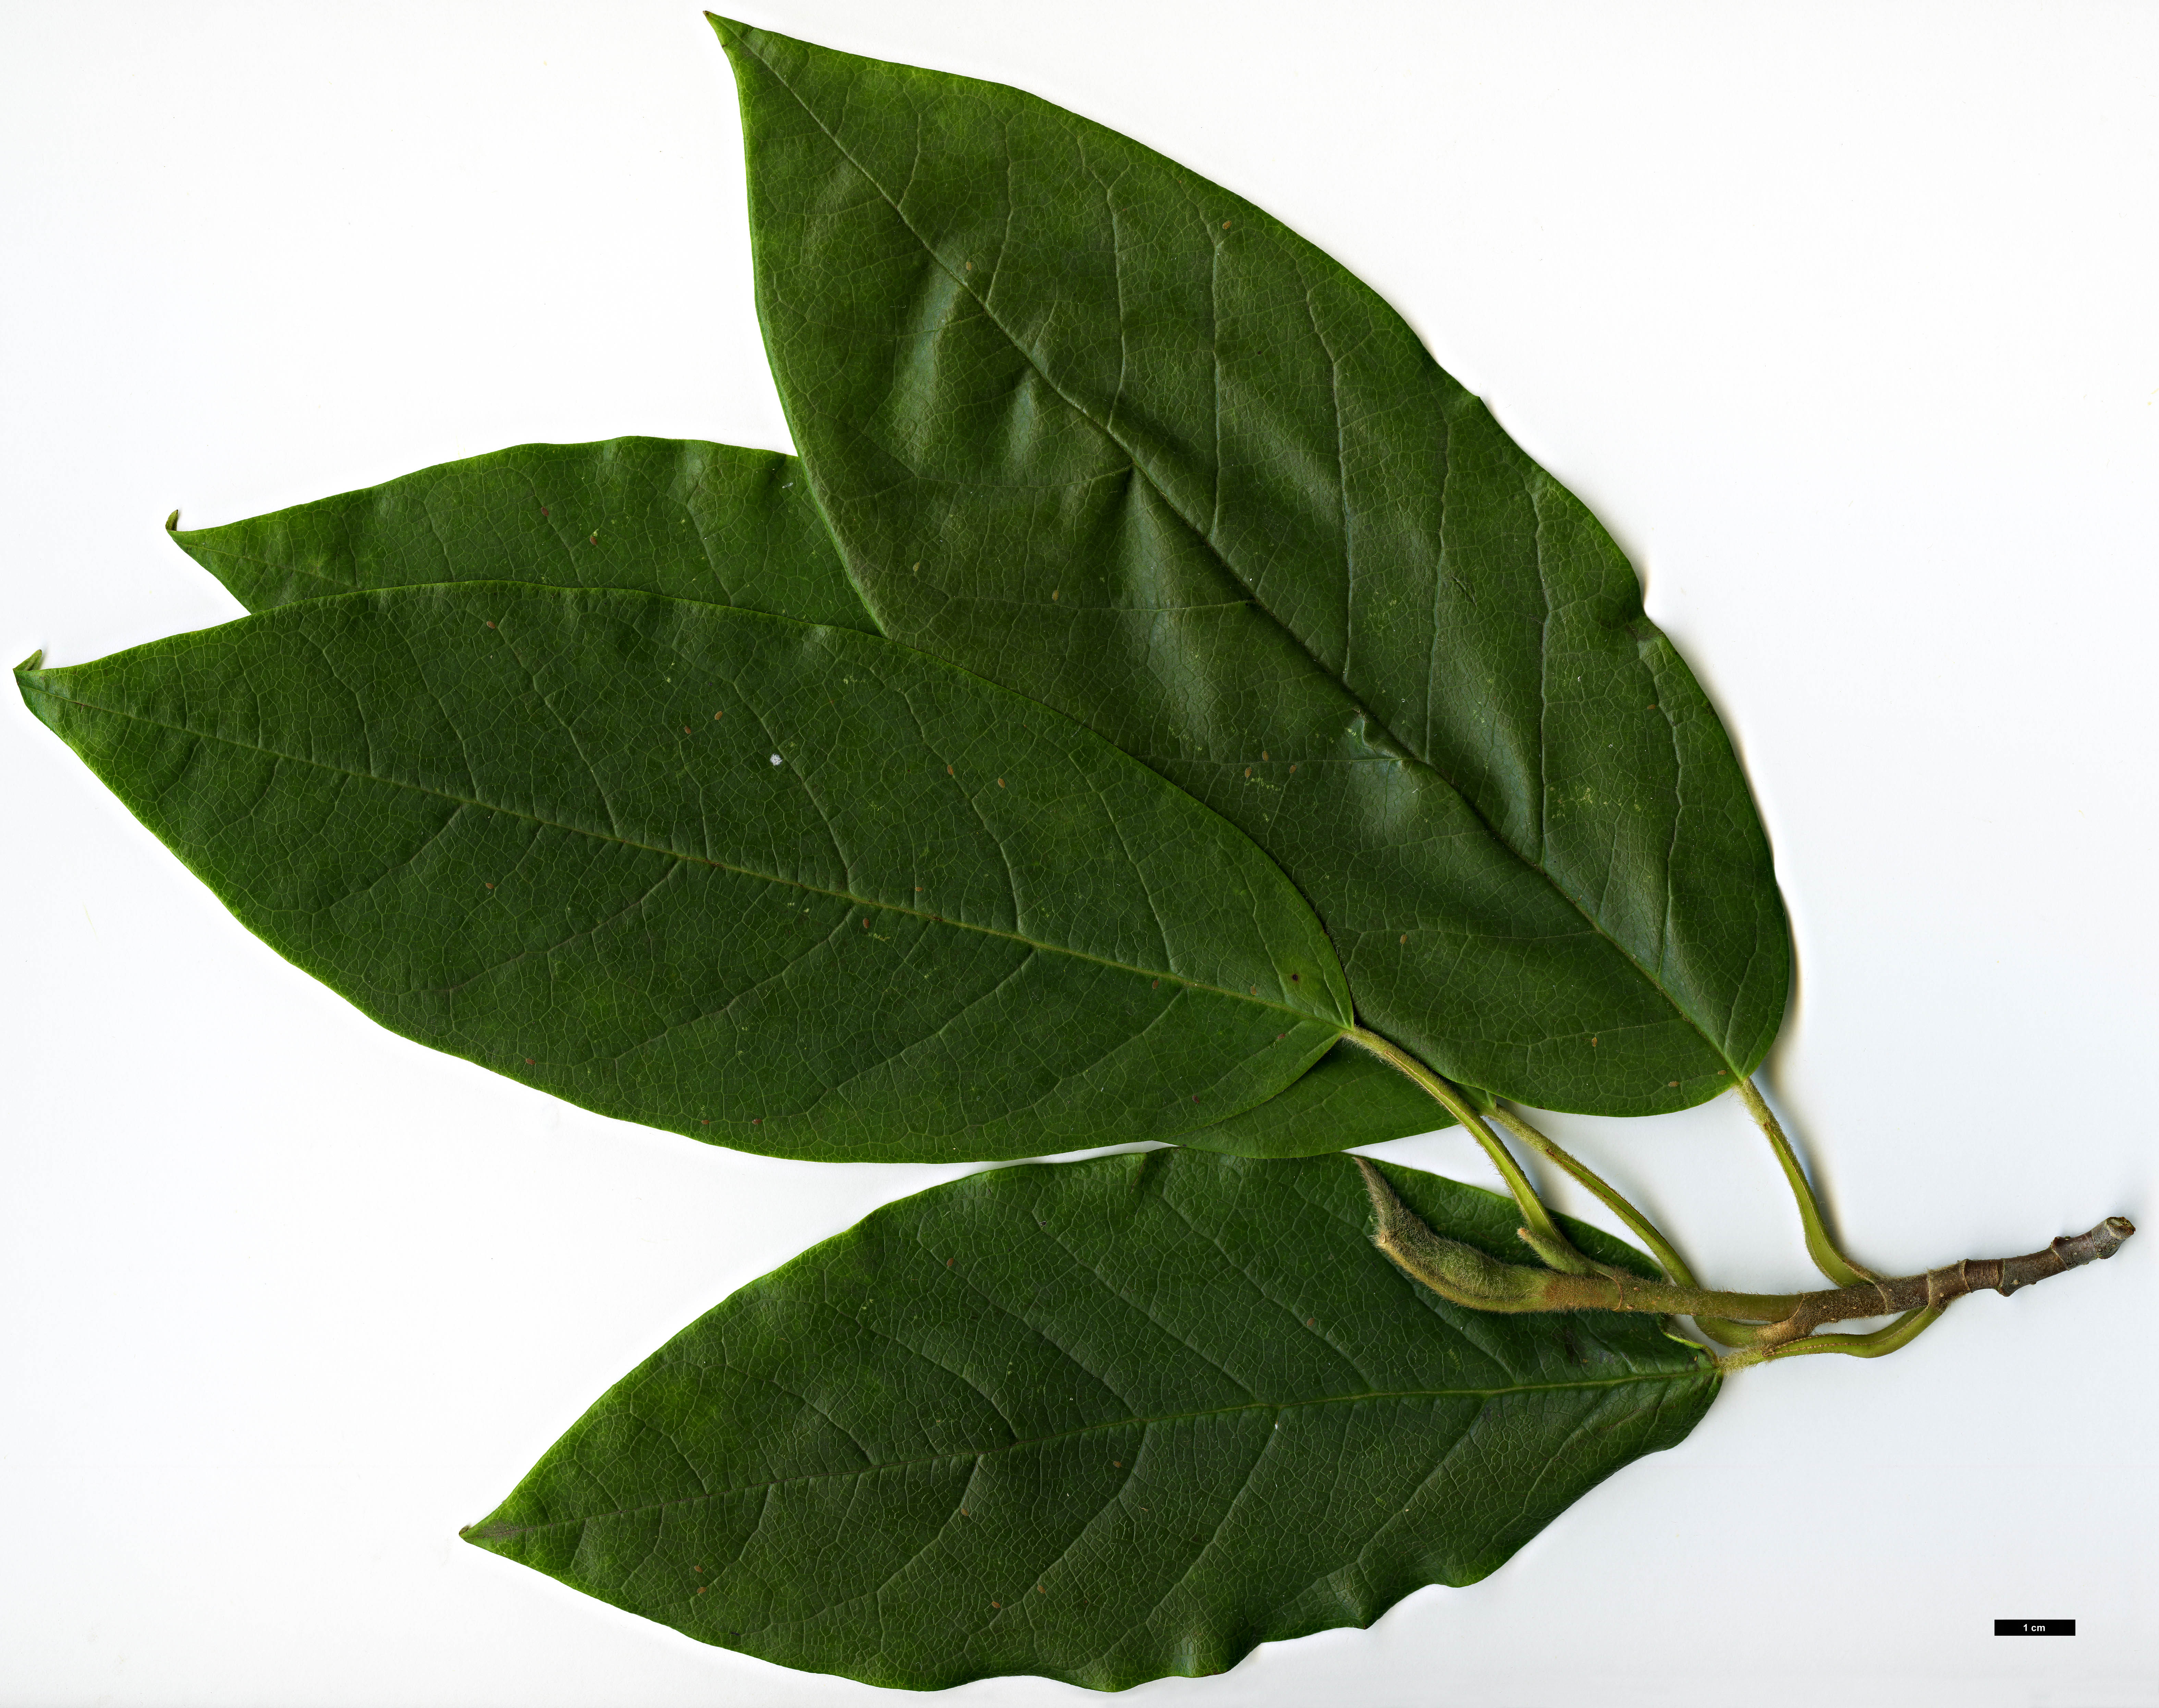 High resolution image: Family: Magnoliaceae - Genus: Magnolia - Taxon: wilsonii